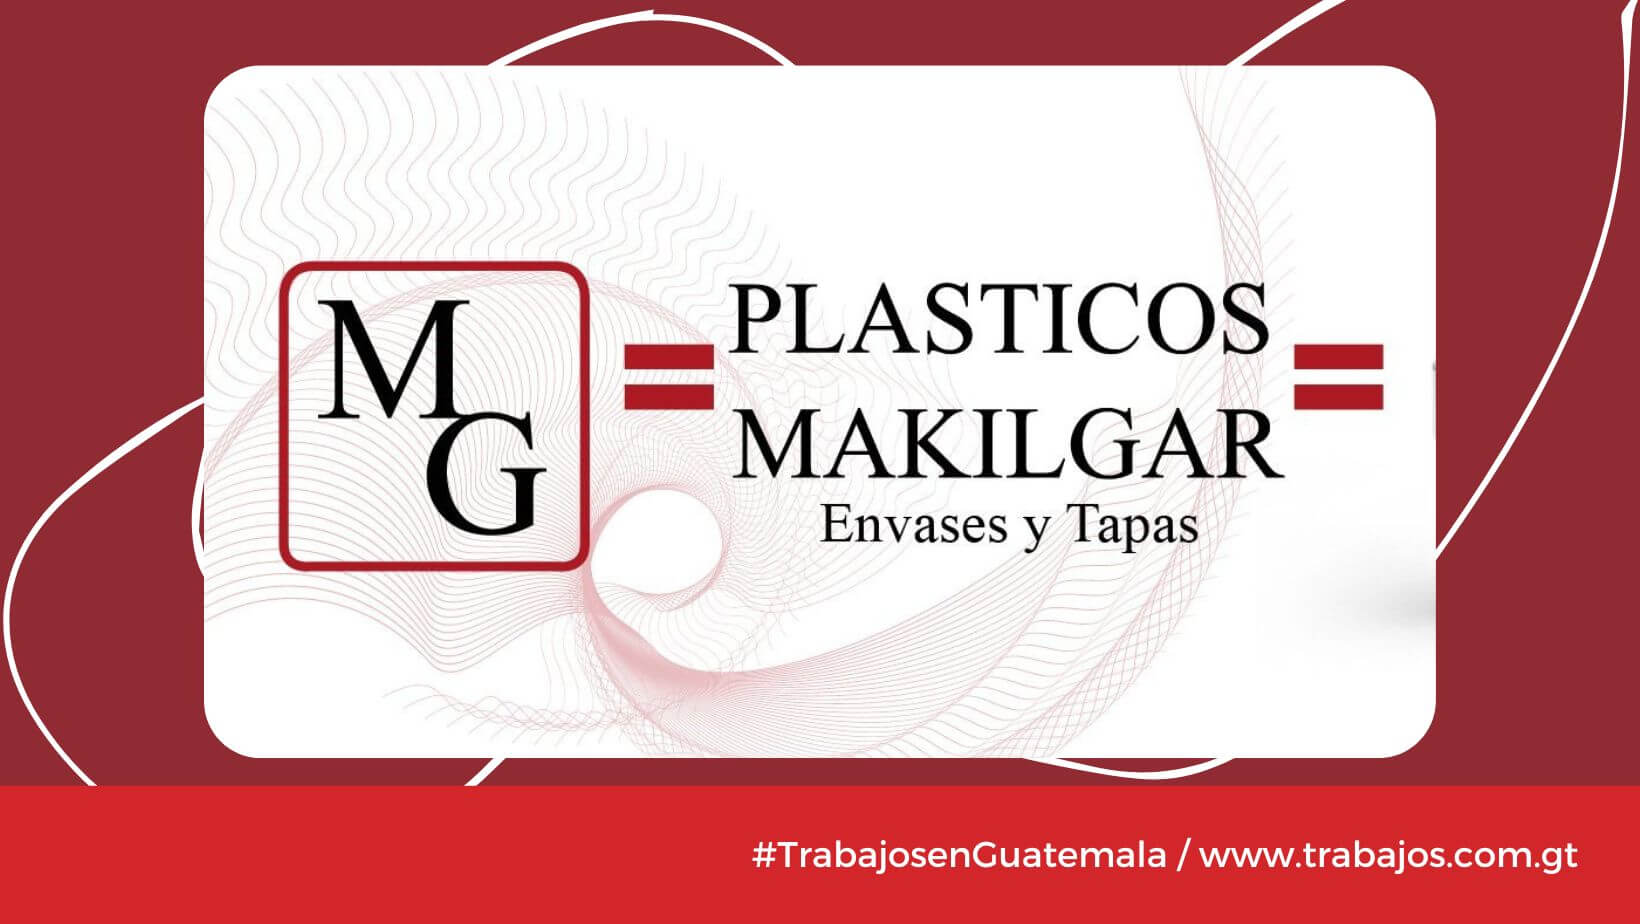 Plásticos Makilgar, S.A.